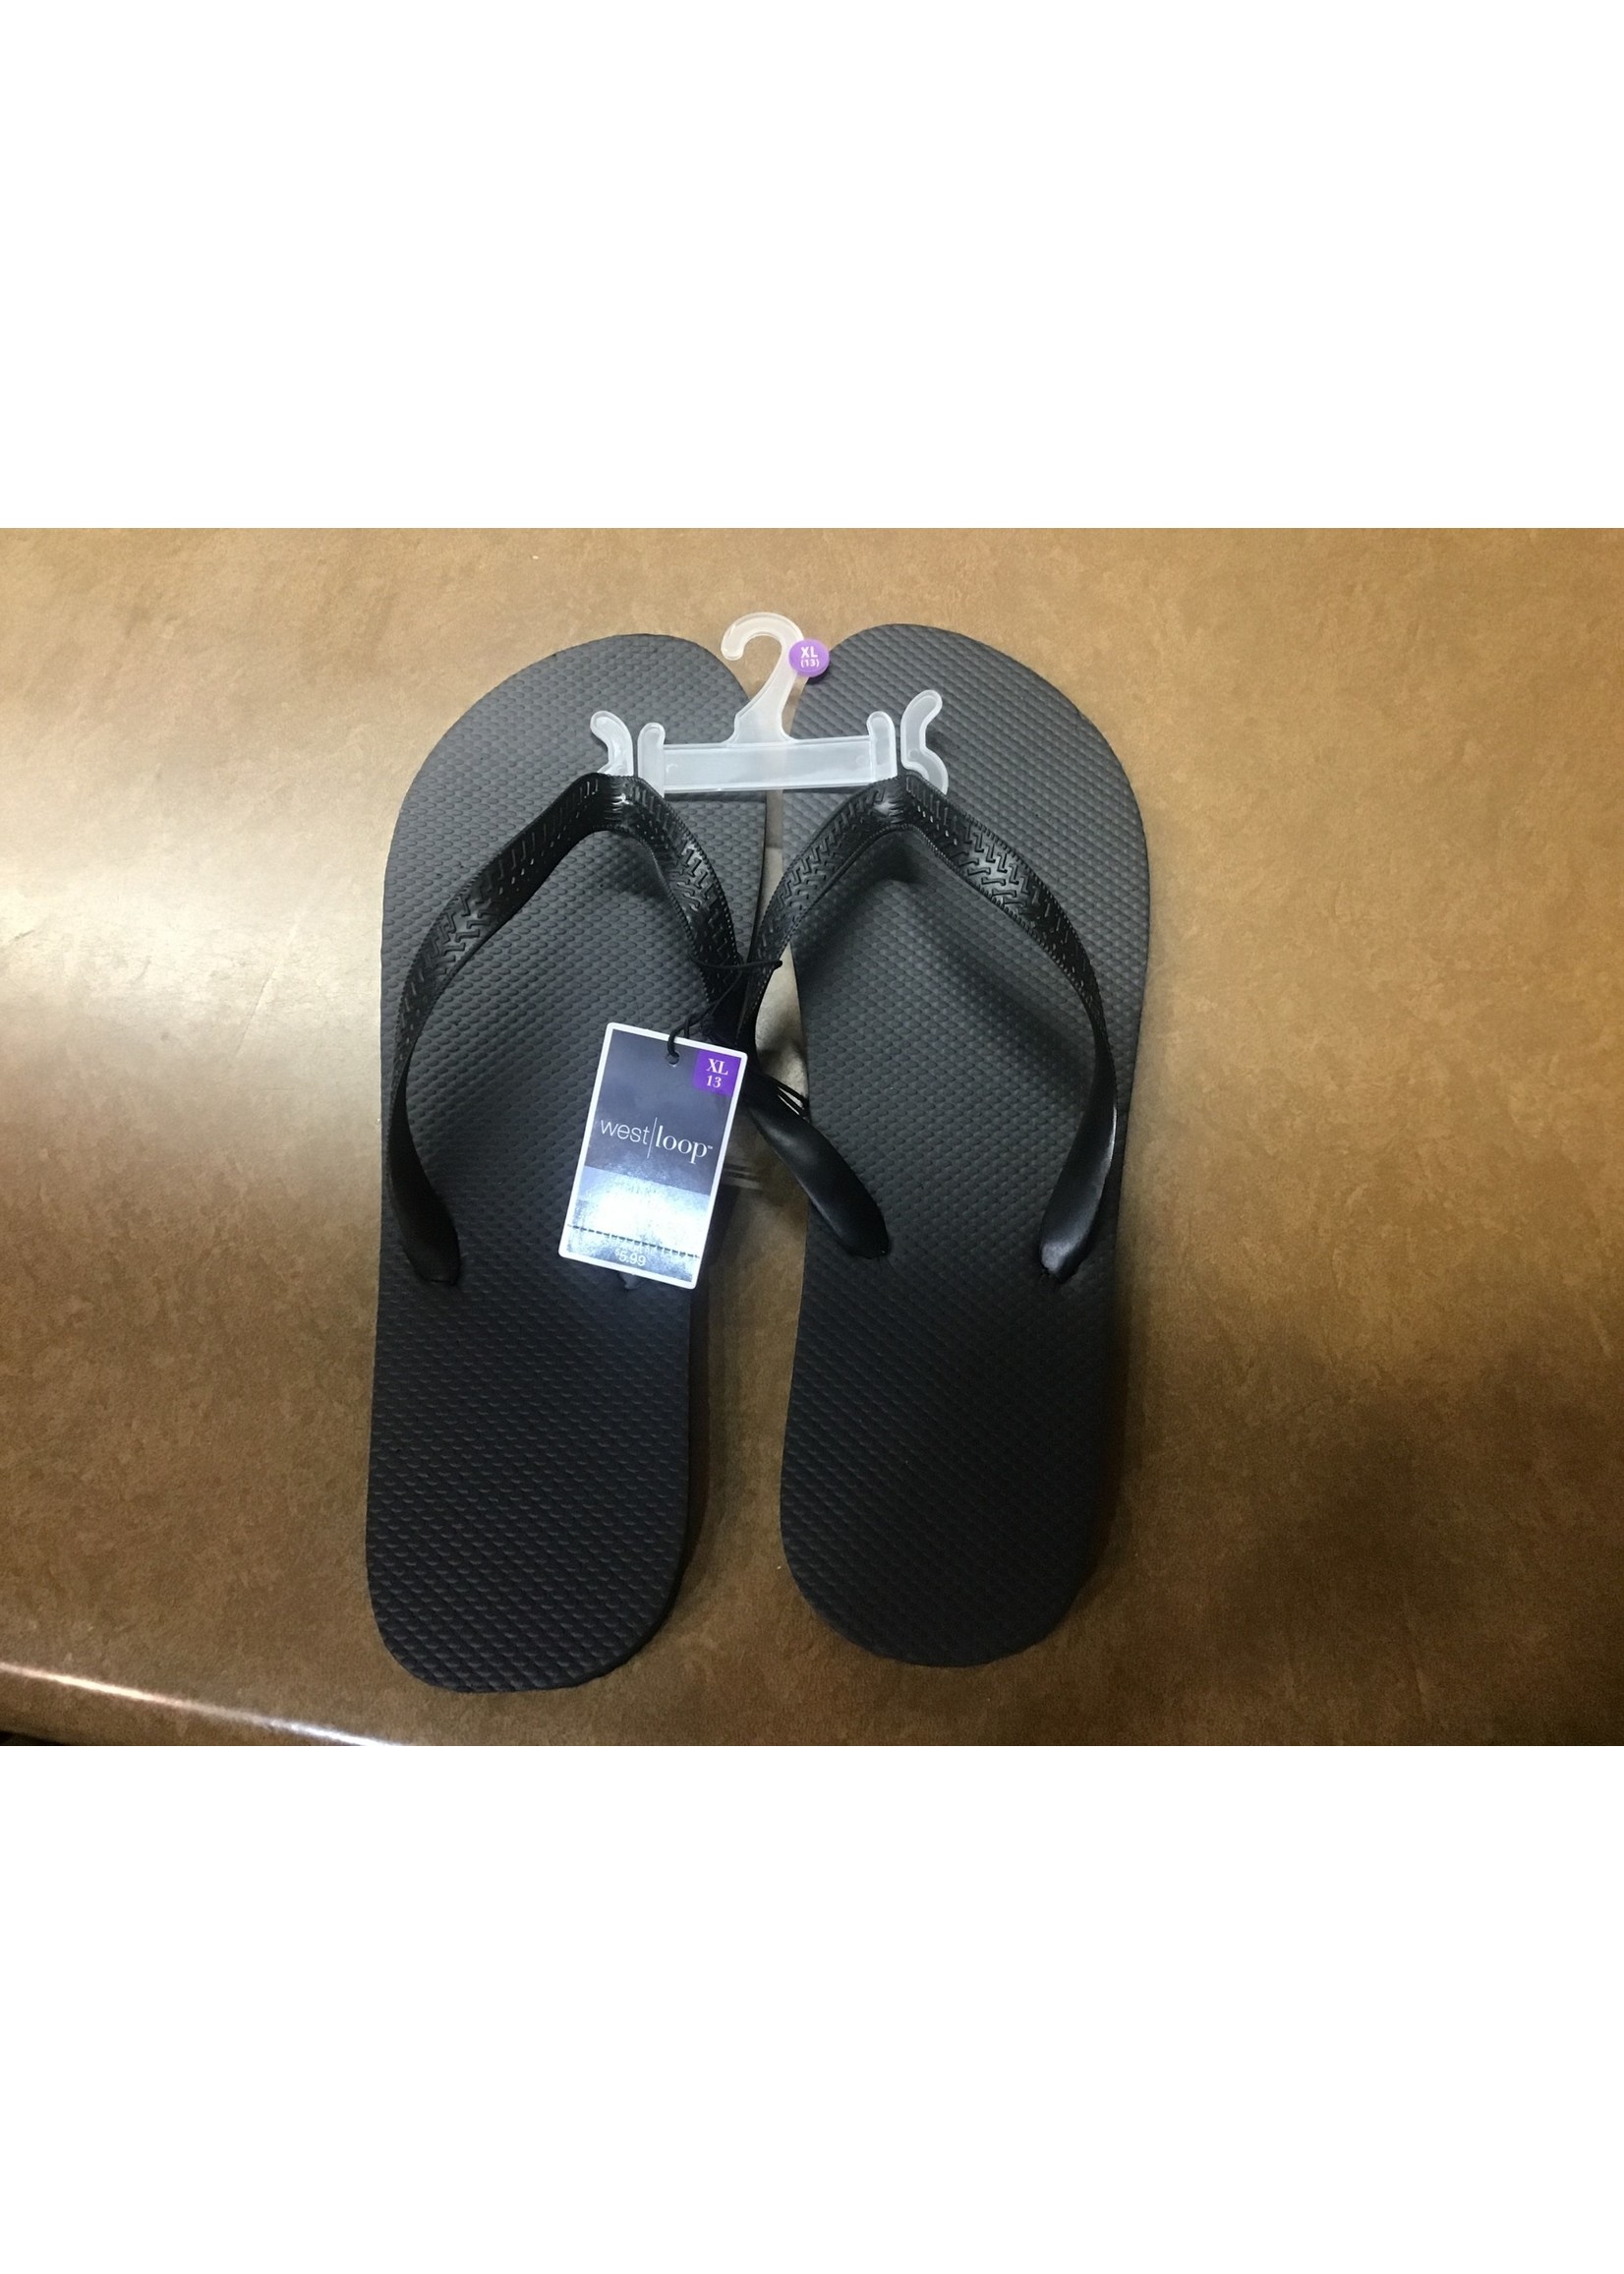 West Loop Men’s Flip Flops Sandals Black XL 13